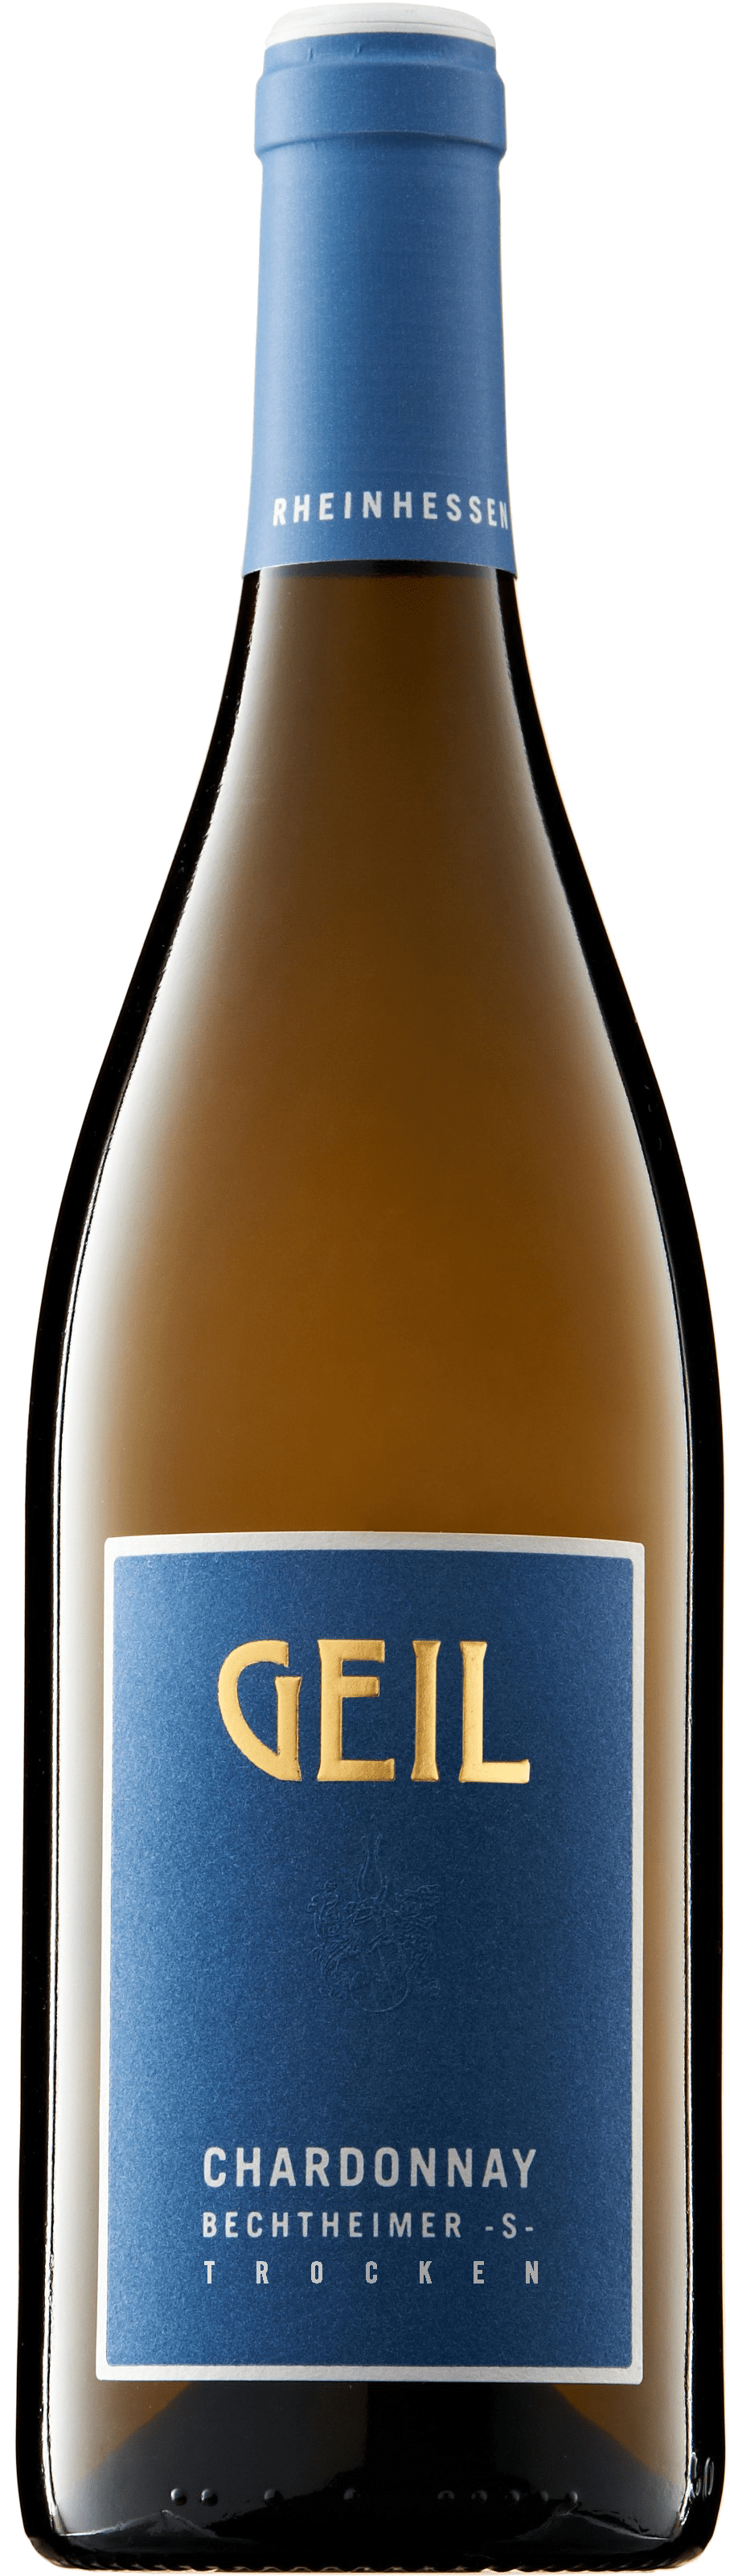 Chardonnay, Bechtheimer